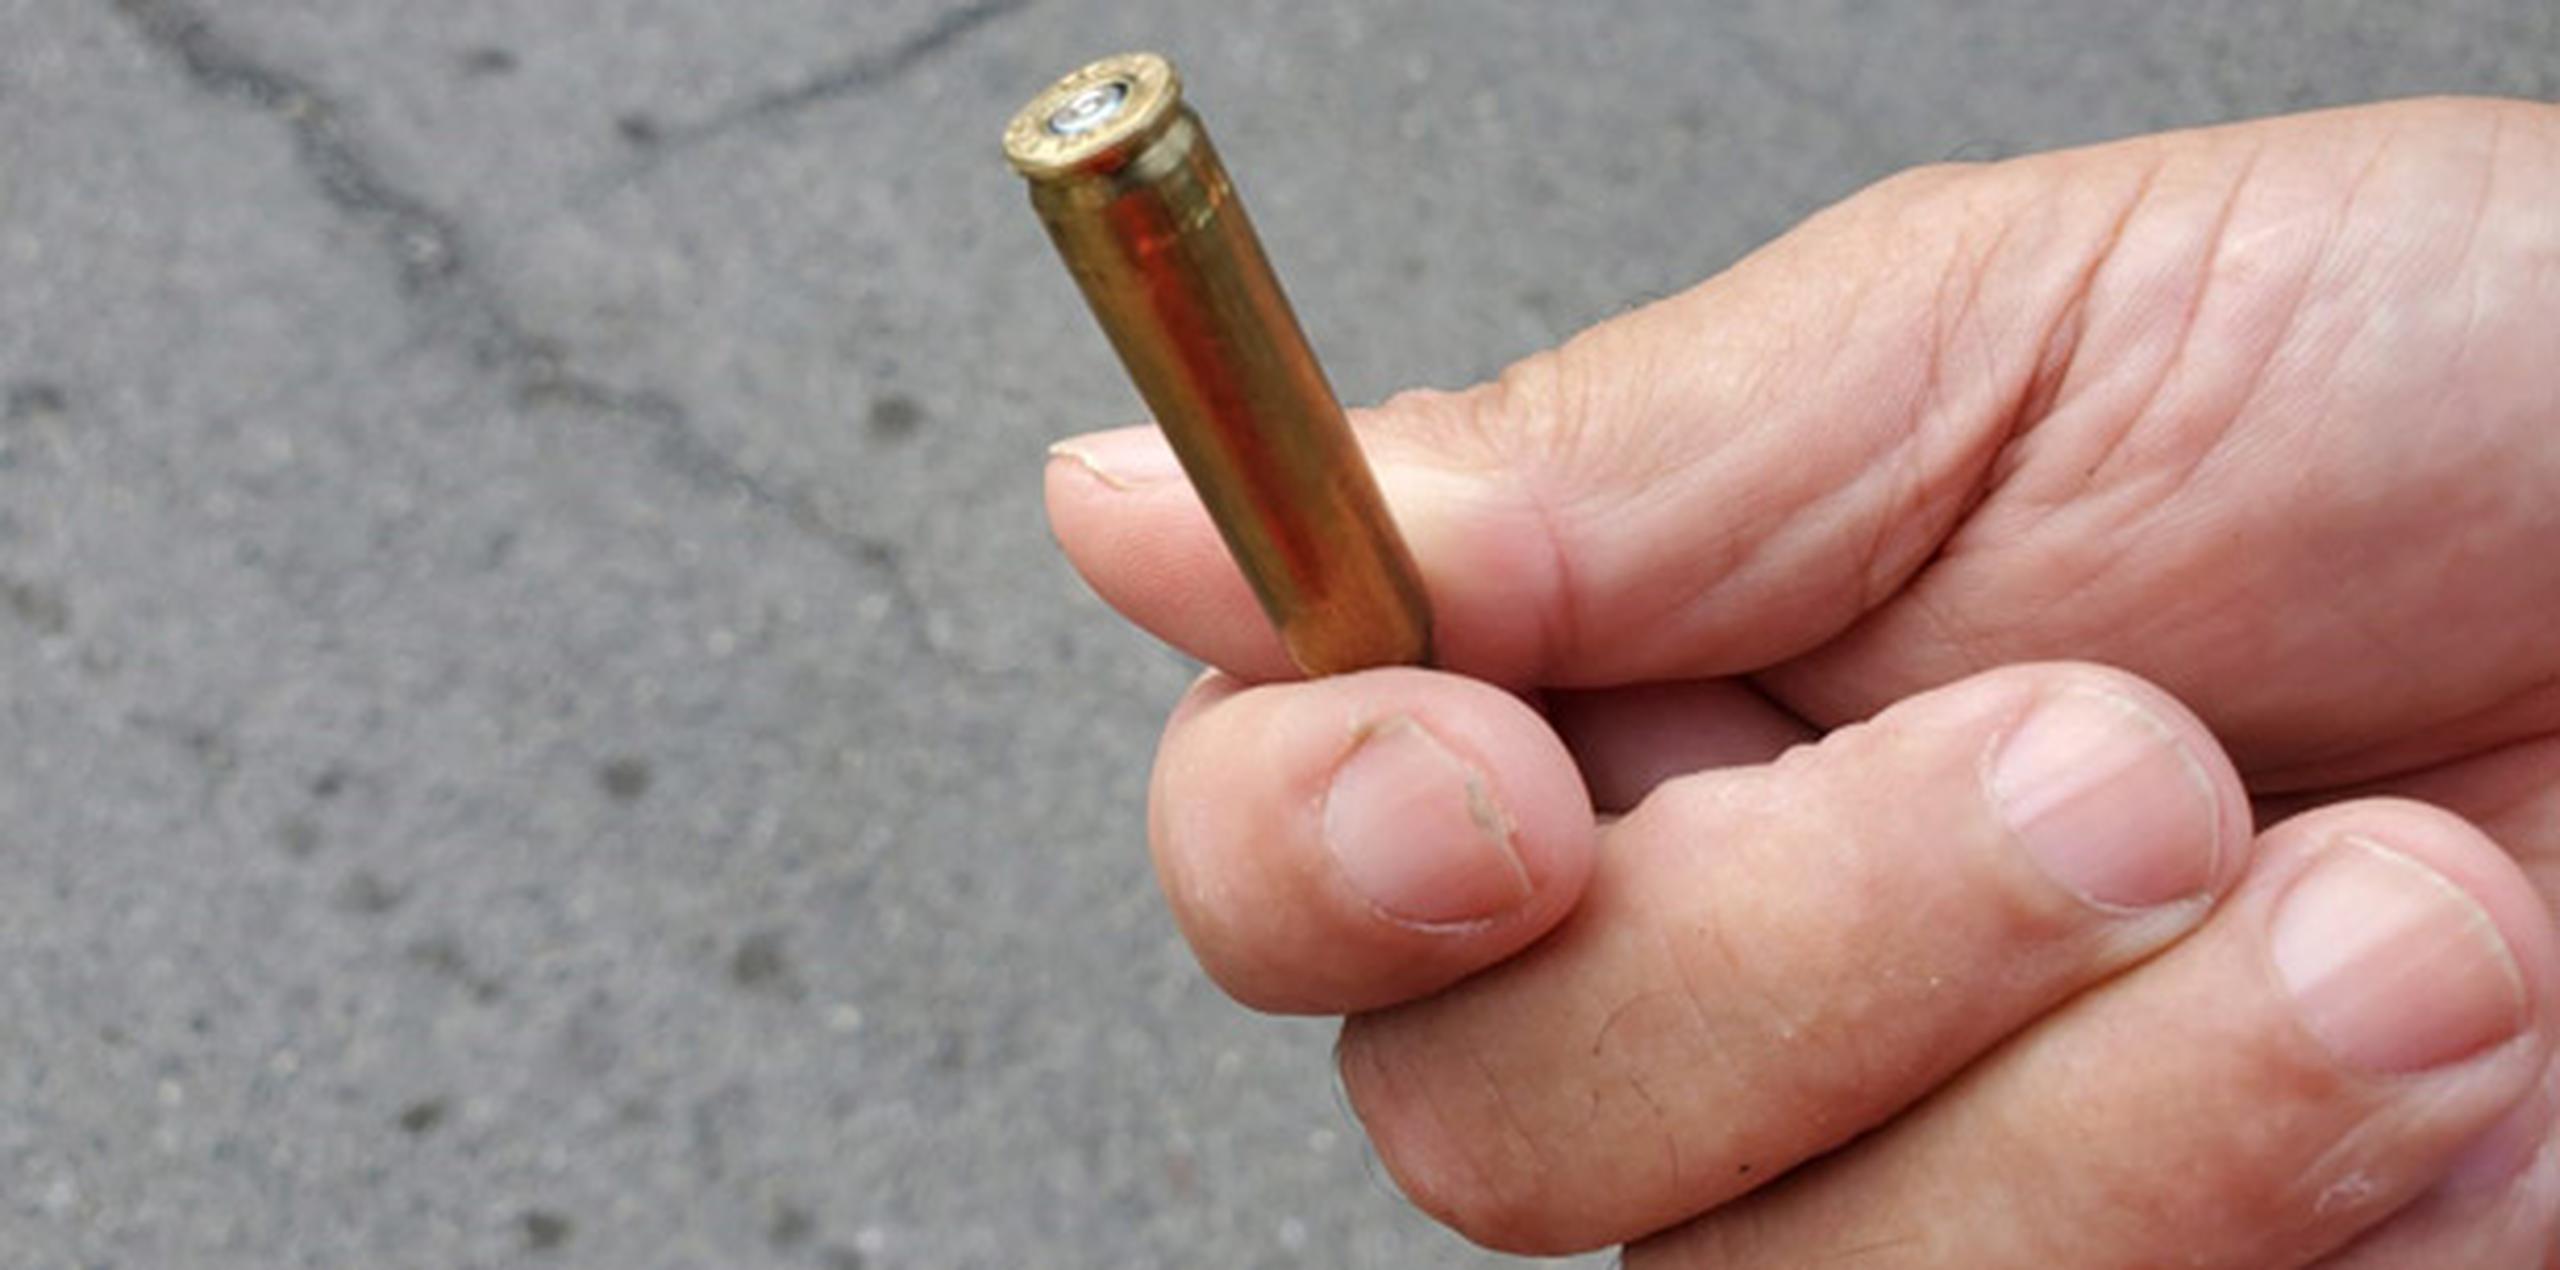 Los vecinos recolectaron alrededor de 80 casquillos de bala esparcidos en la carretera del  más reciente incidente violento en la zona. (osman.perez@gfrmedia.com) 